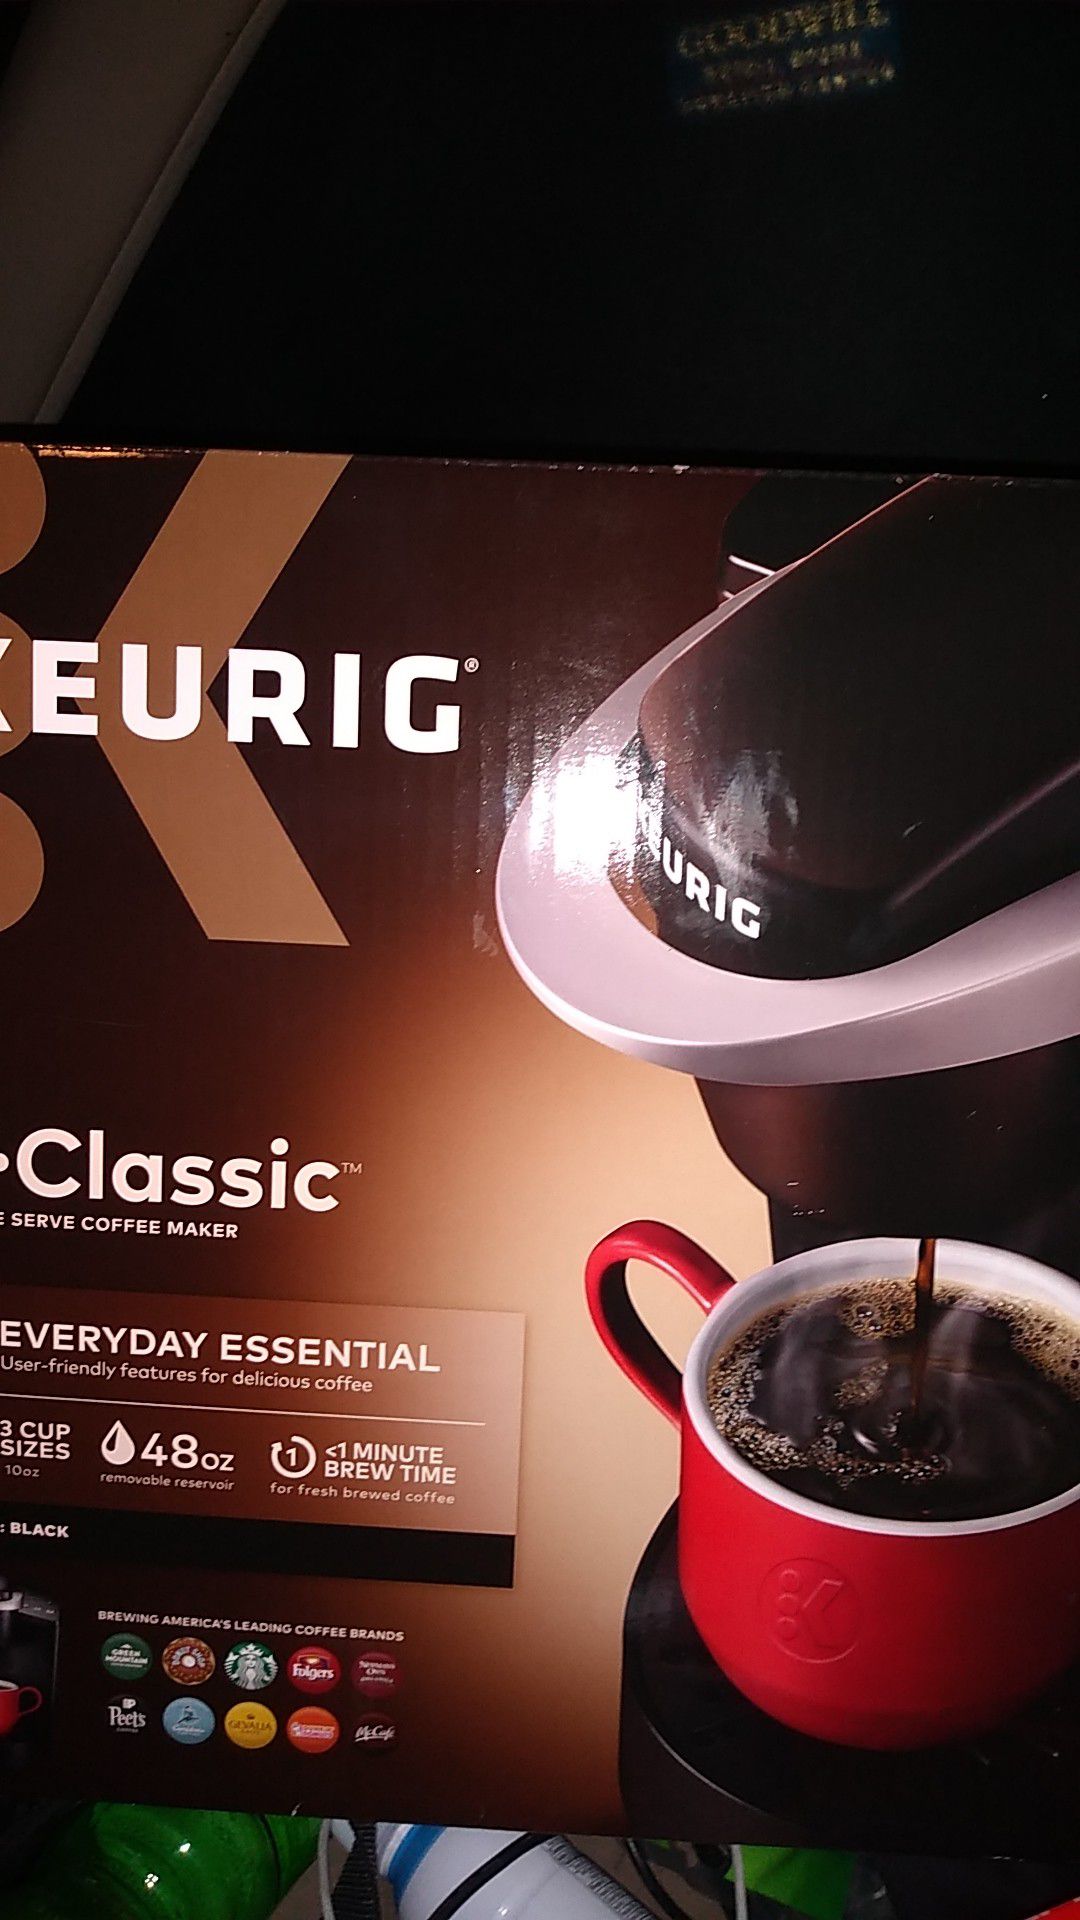 Brand New Keurig coffee maker